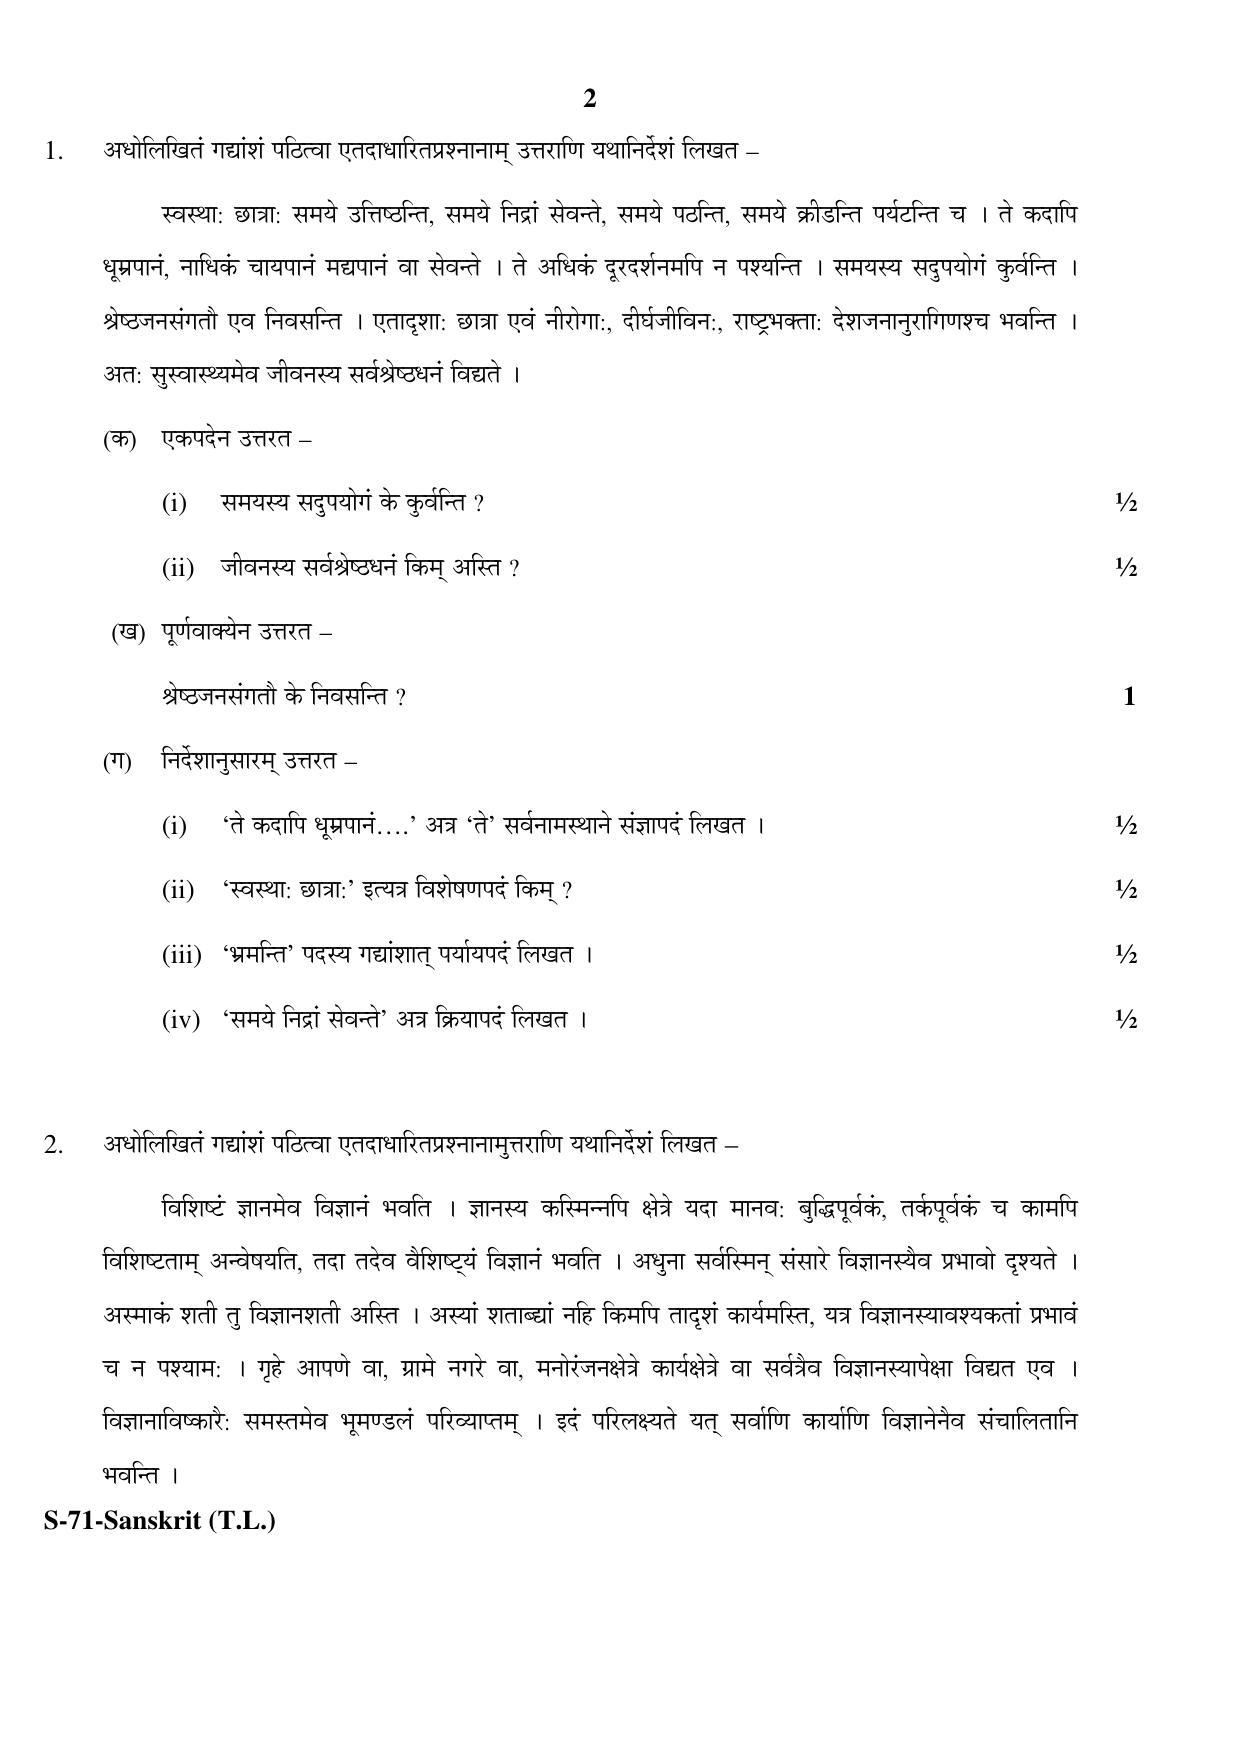 RBSE Class 10 Sanskrit (T.L.) 2017 Question Paper - Page 2